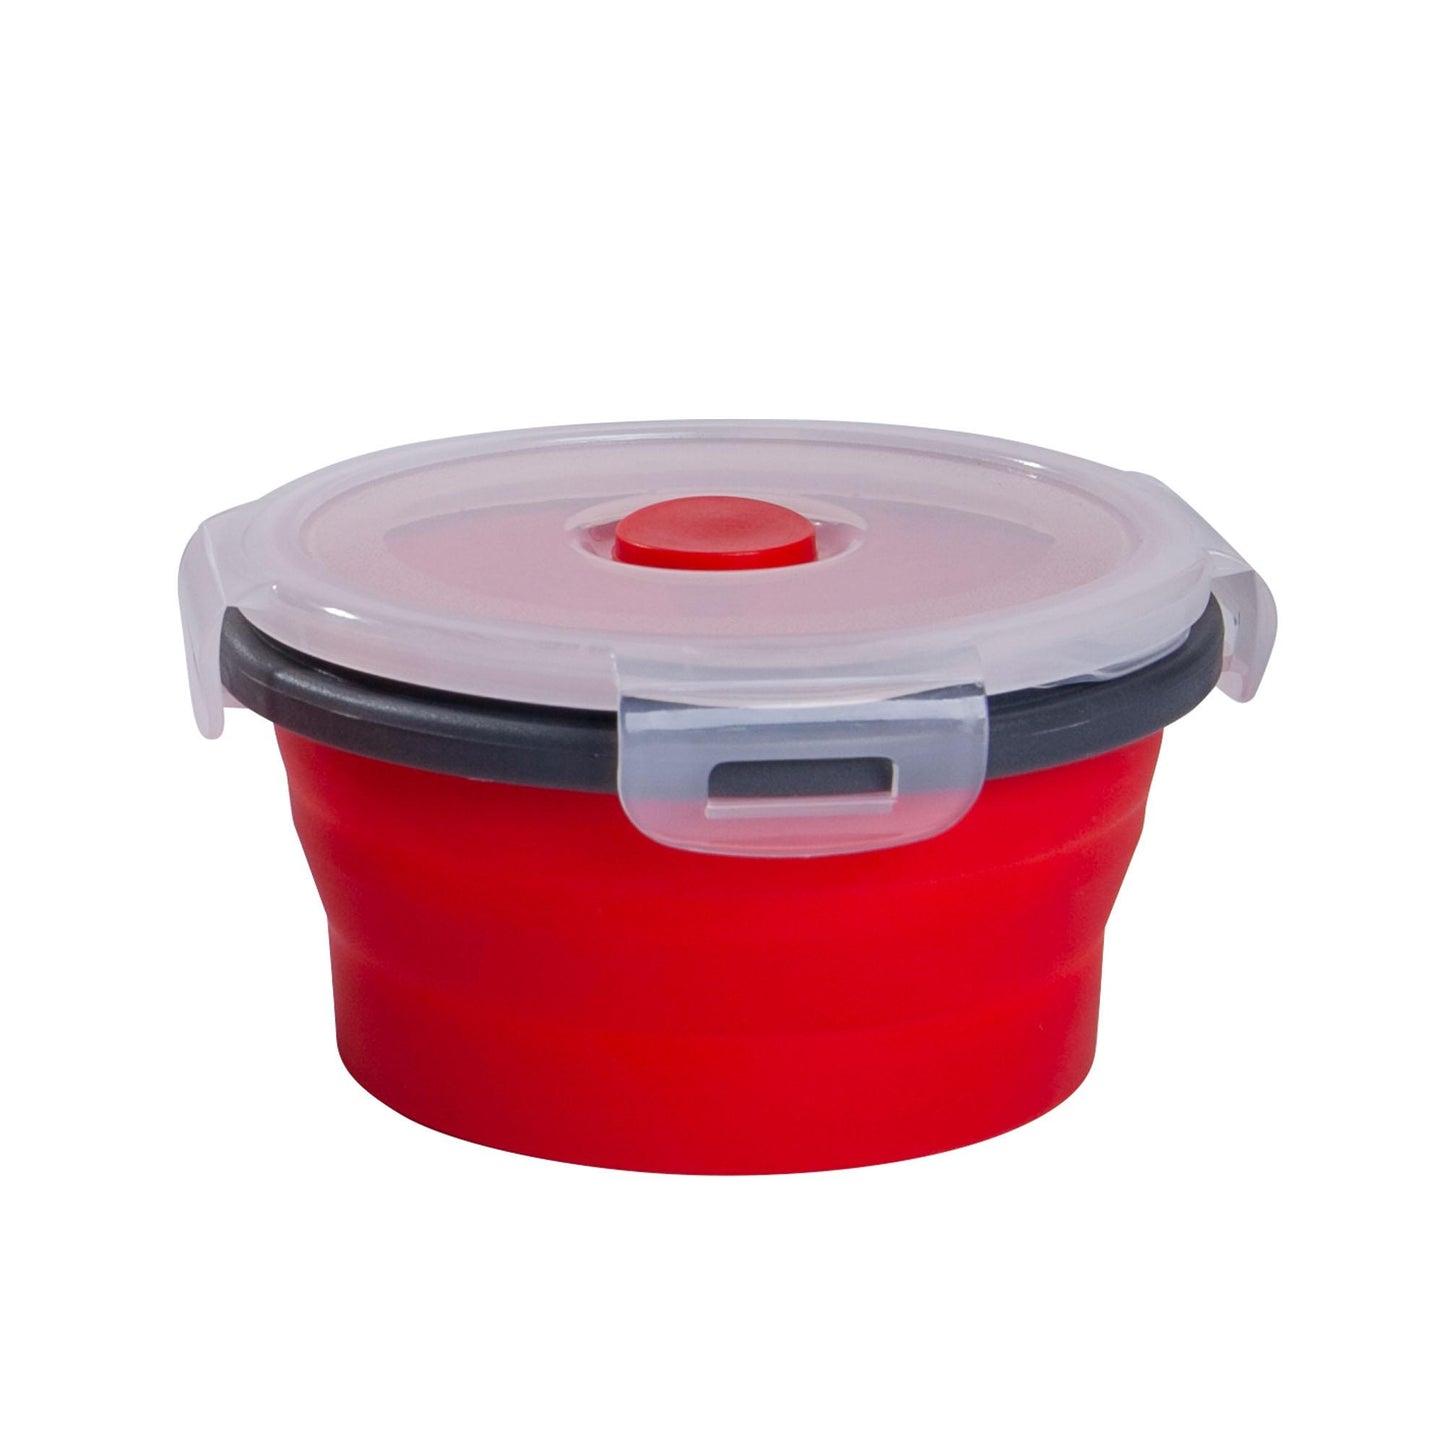 Mixcover opvouwbare cerebrale dosis met deksel gemaakt van siliconen bentobox lunchbox lunchbox picnick camping kom bpa-vrije ruimte besparen 350 ml rood rood